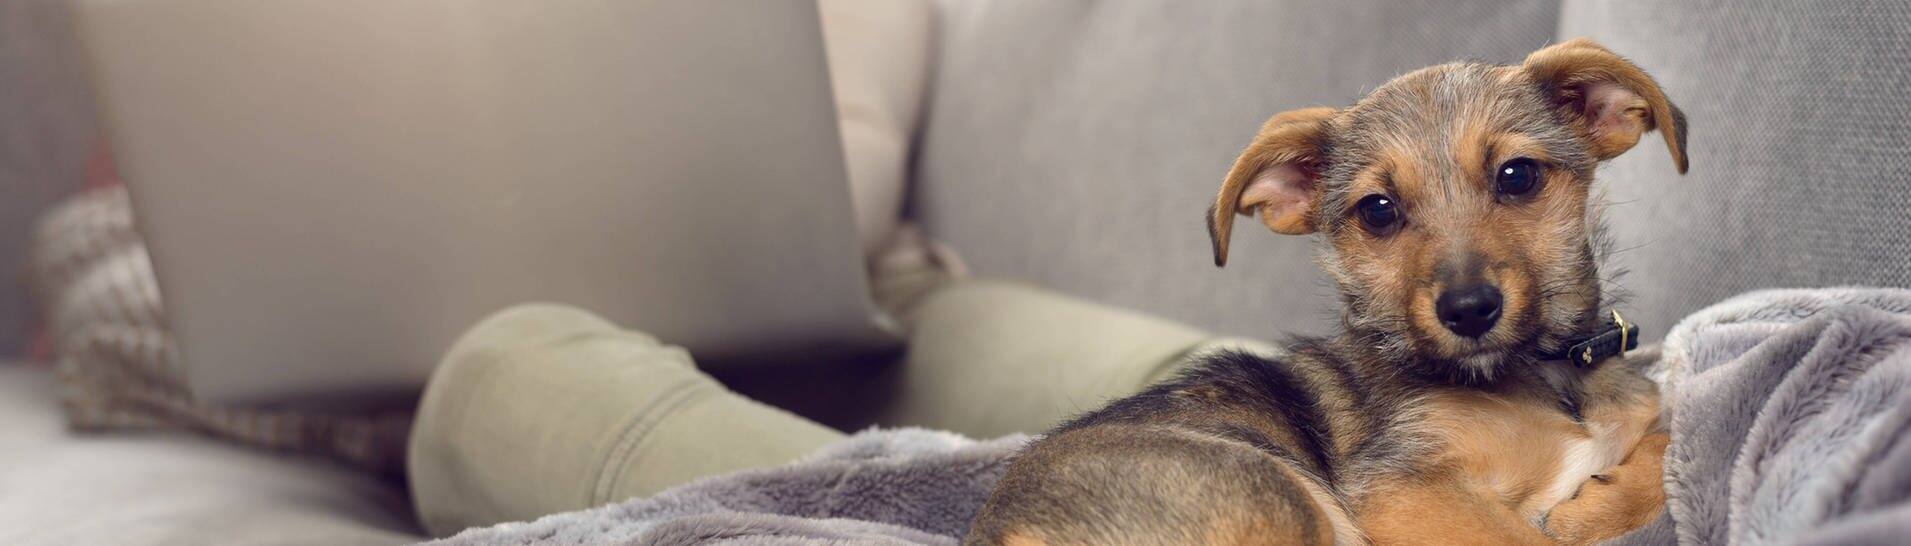 Hund anschaffen während Corona (Foto: IMAGO, imago images / Shotshop)